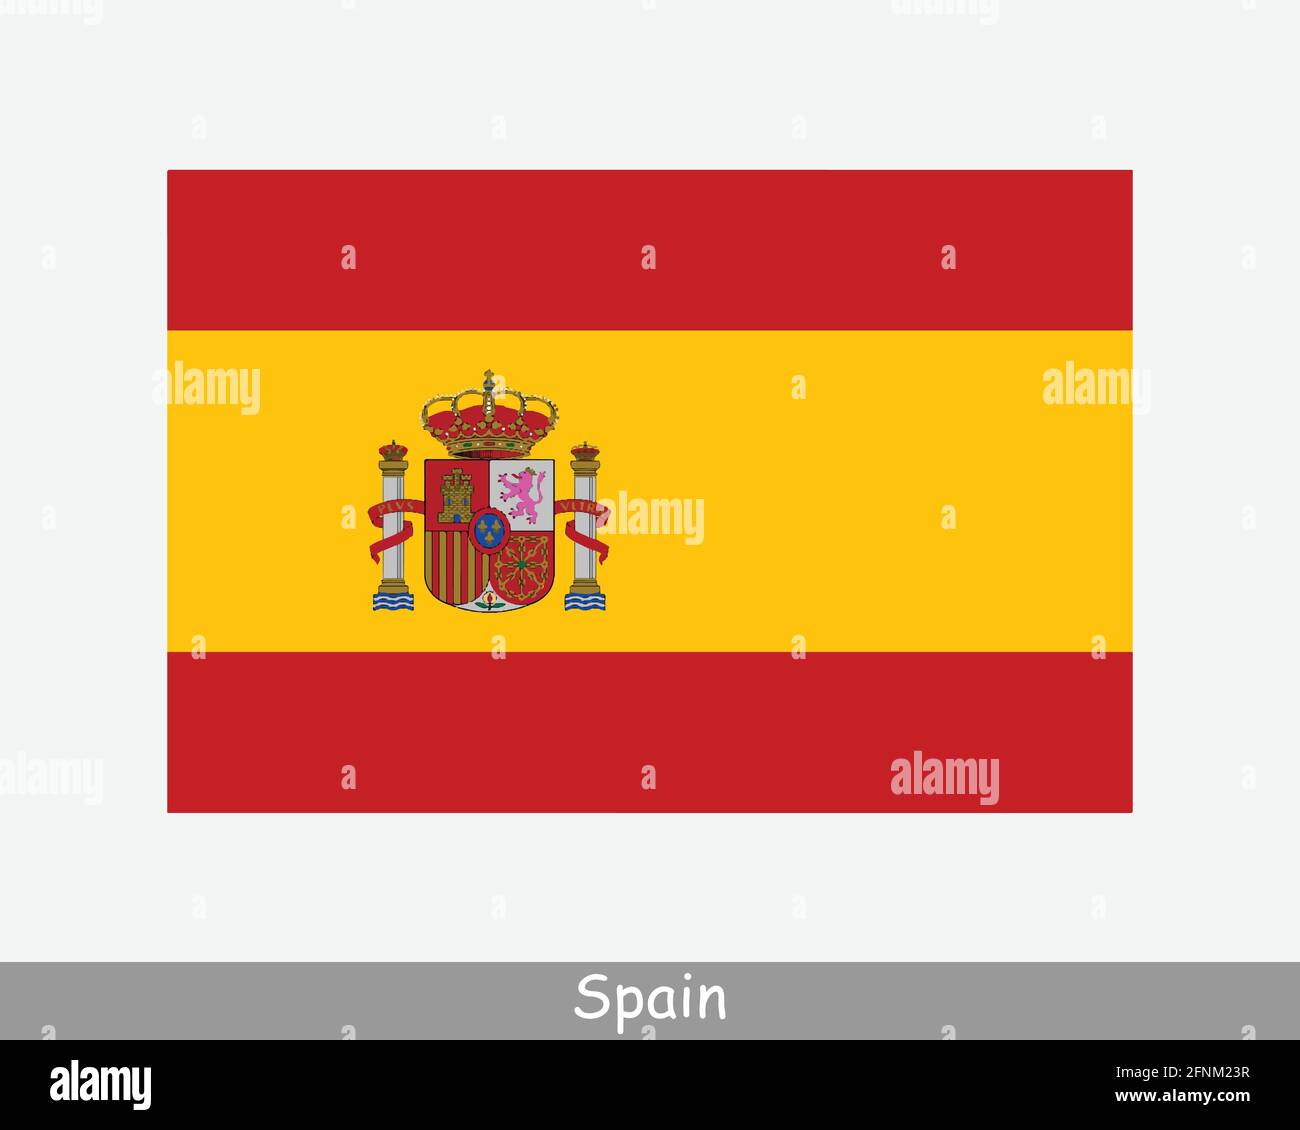 Bandera Nacional de España. Bandera de España. Banner detallado del Reino de España. Archivo de ilustración de vectores EPS Ilustración del Vector